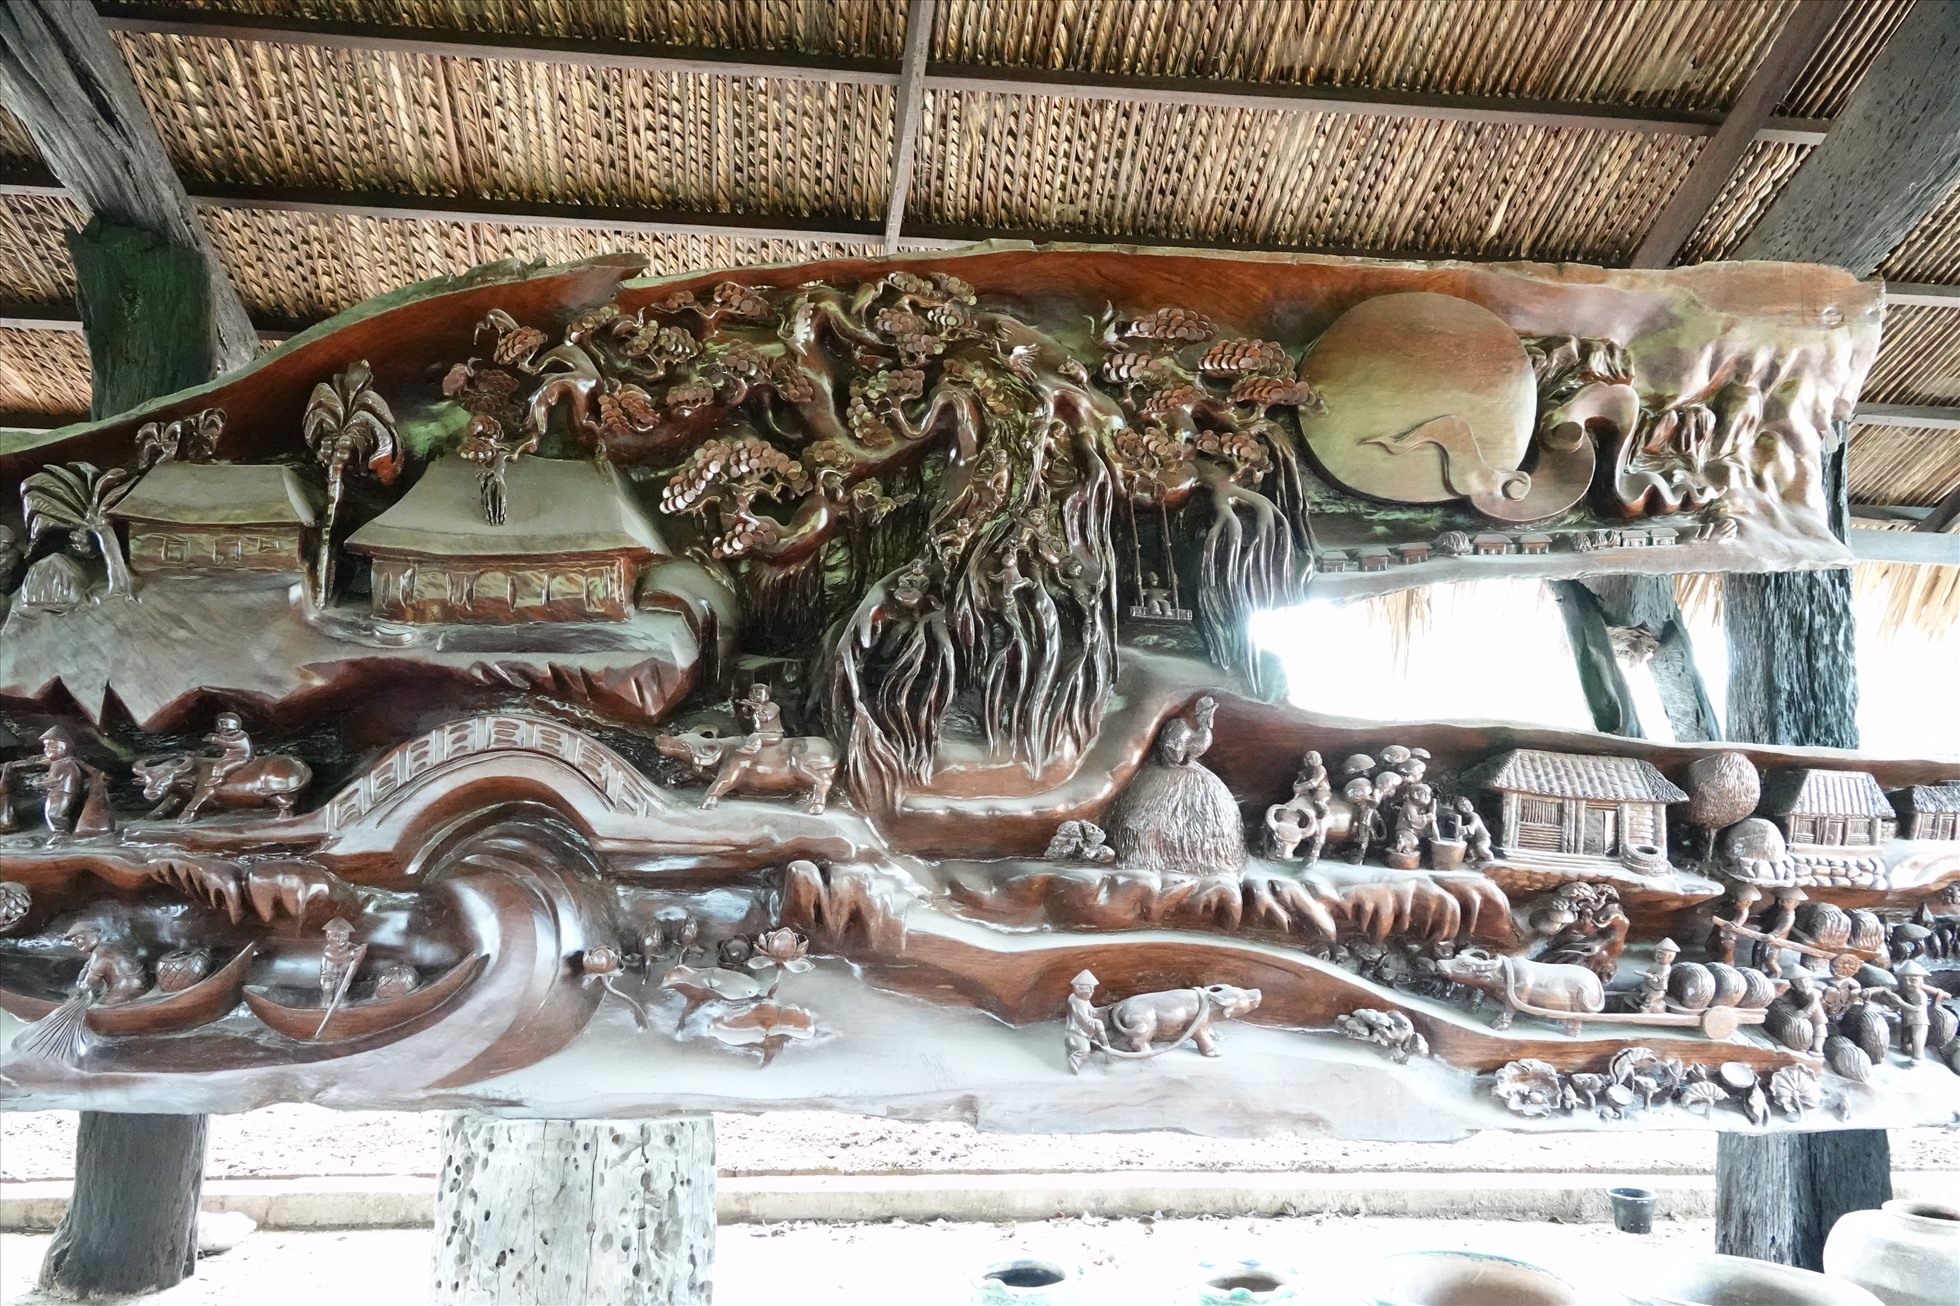 Là người say mê sưu tầm gỗ lũa có tiếng ở An Giang, ông Nguyễn Văn Nghỉ (44 tuổi, huyện Chợ Mới, tỉnh An Giang) đang sở hữu trên 50 tác phẩm điêu khắc từ gỗ lũa có kích thước khác nhau từ nhỏ đến lớn.